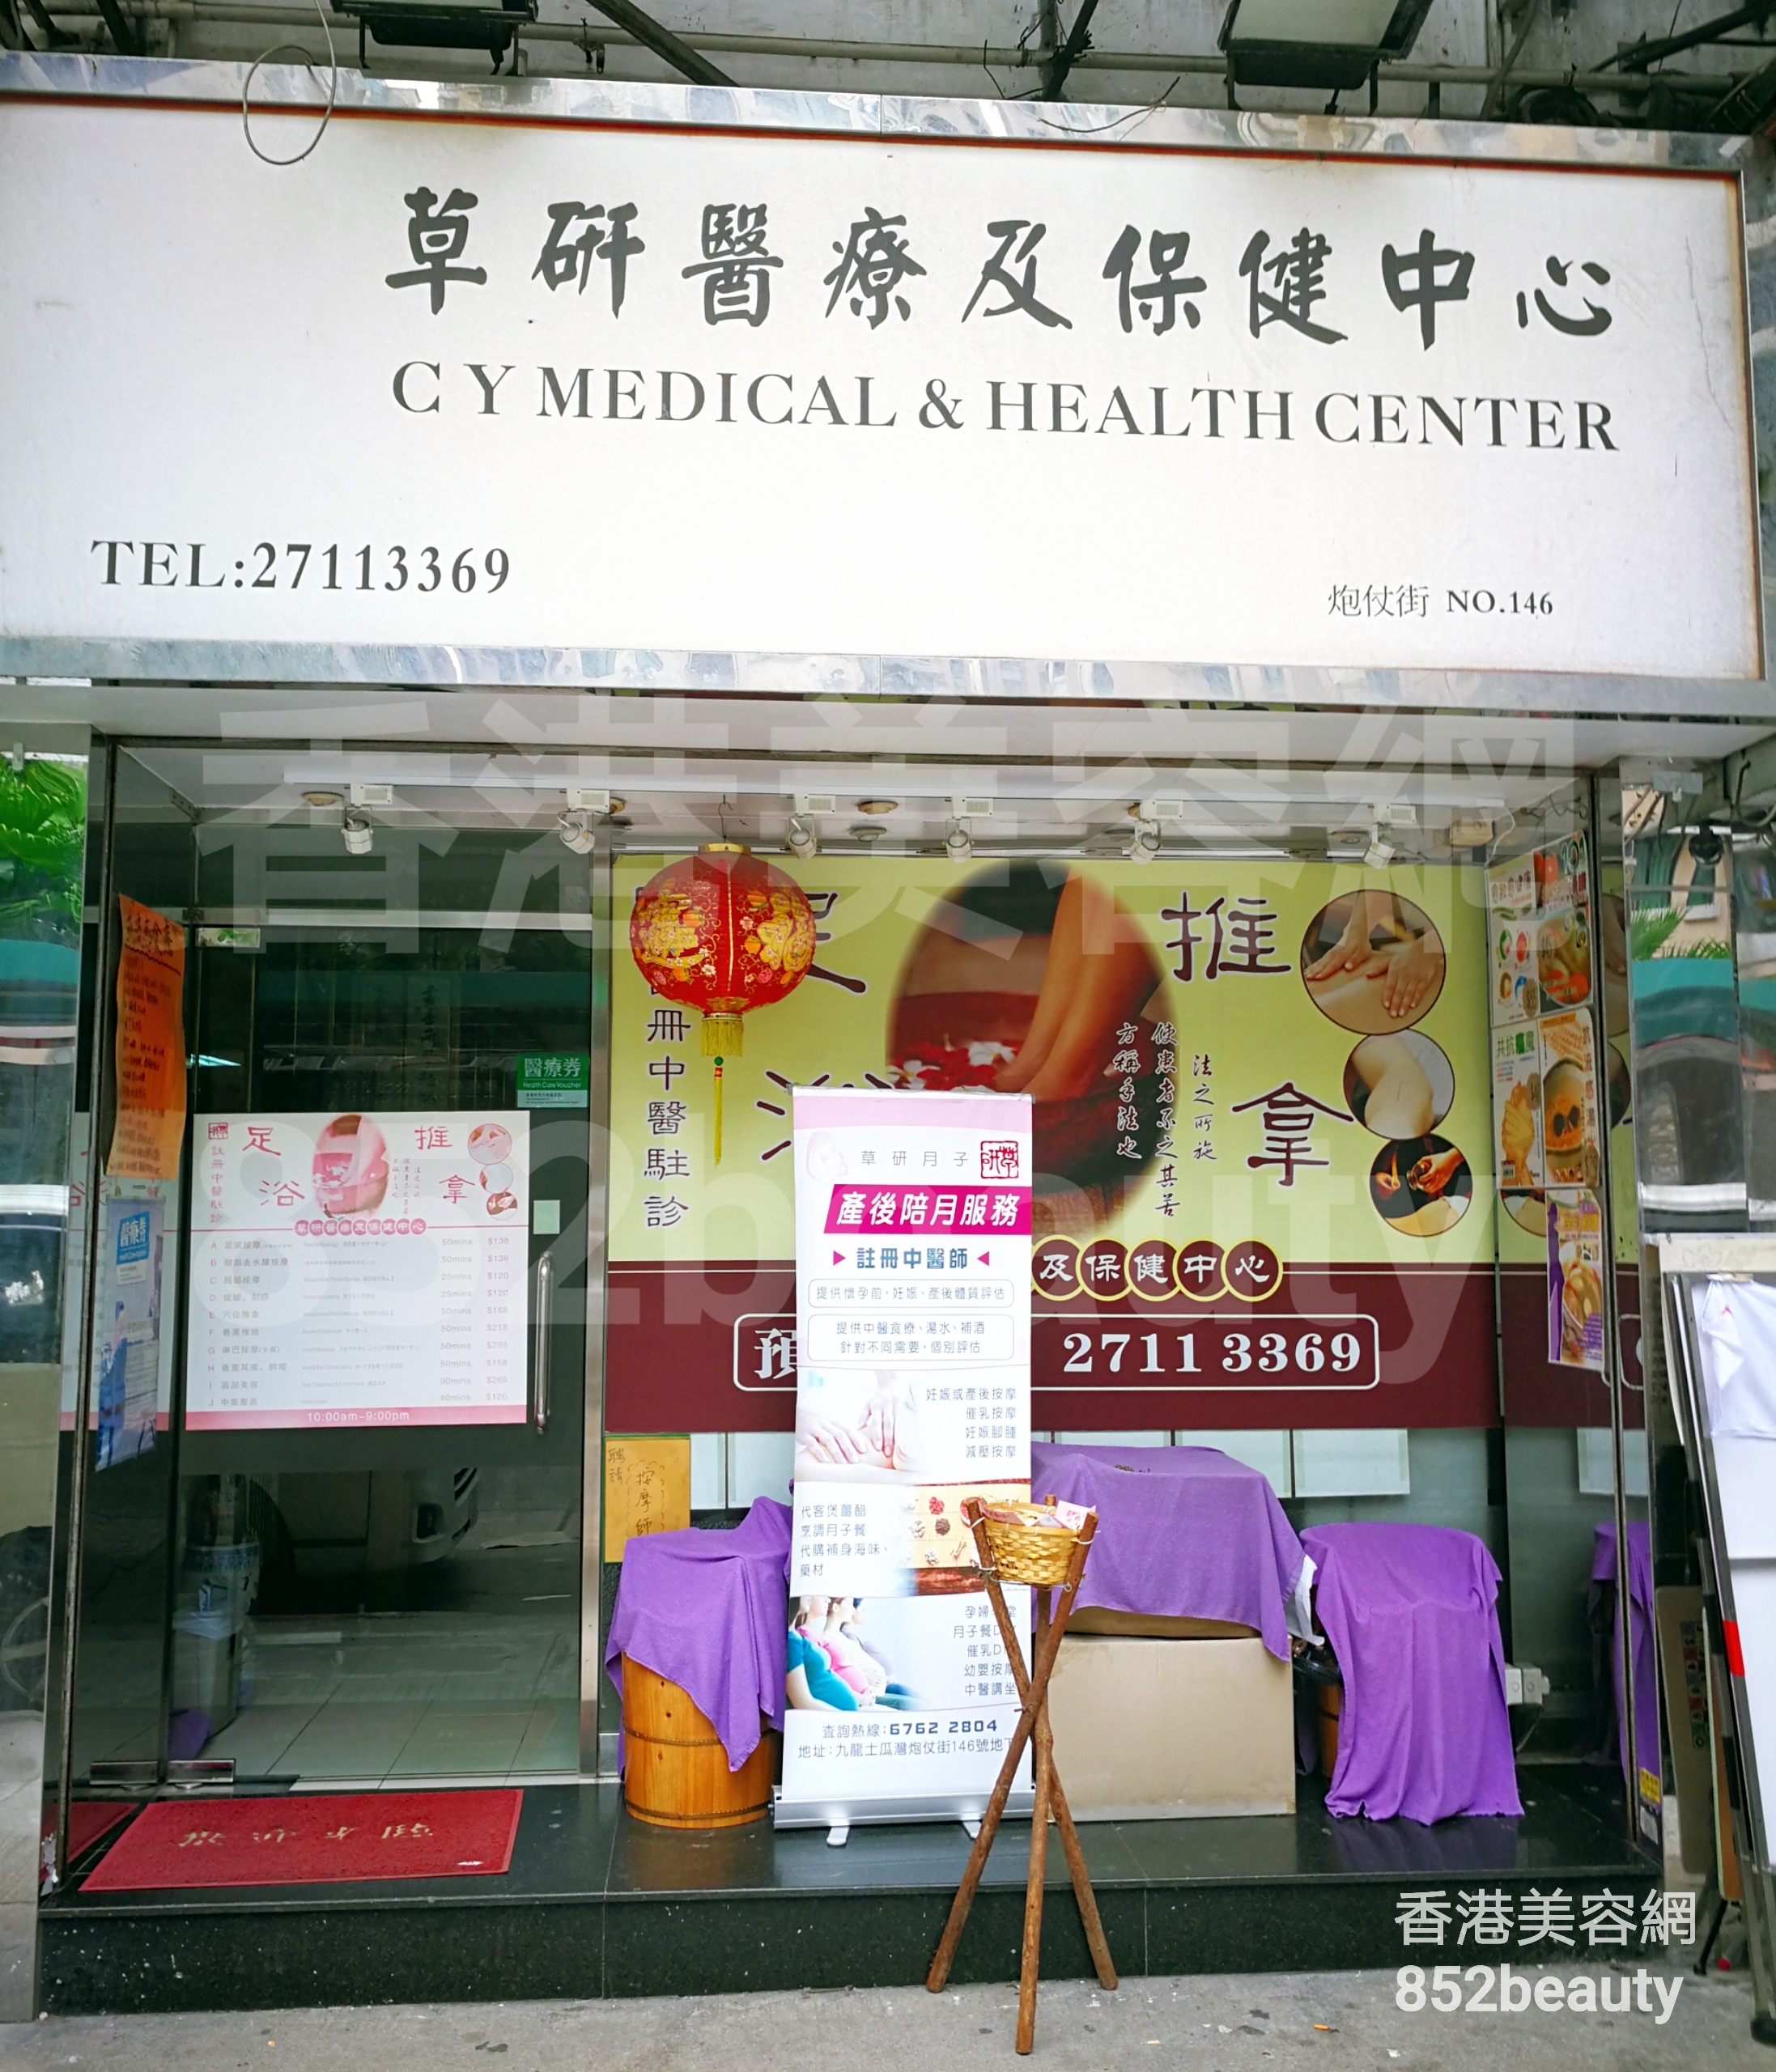 美容院 Beauty Salon: 草研醫療及保健中心